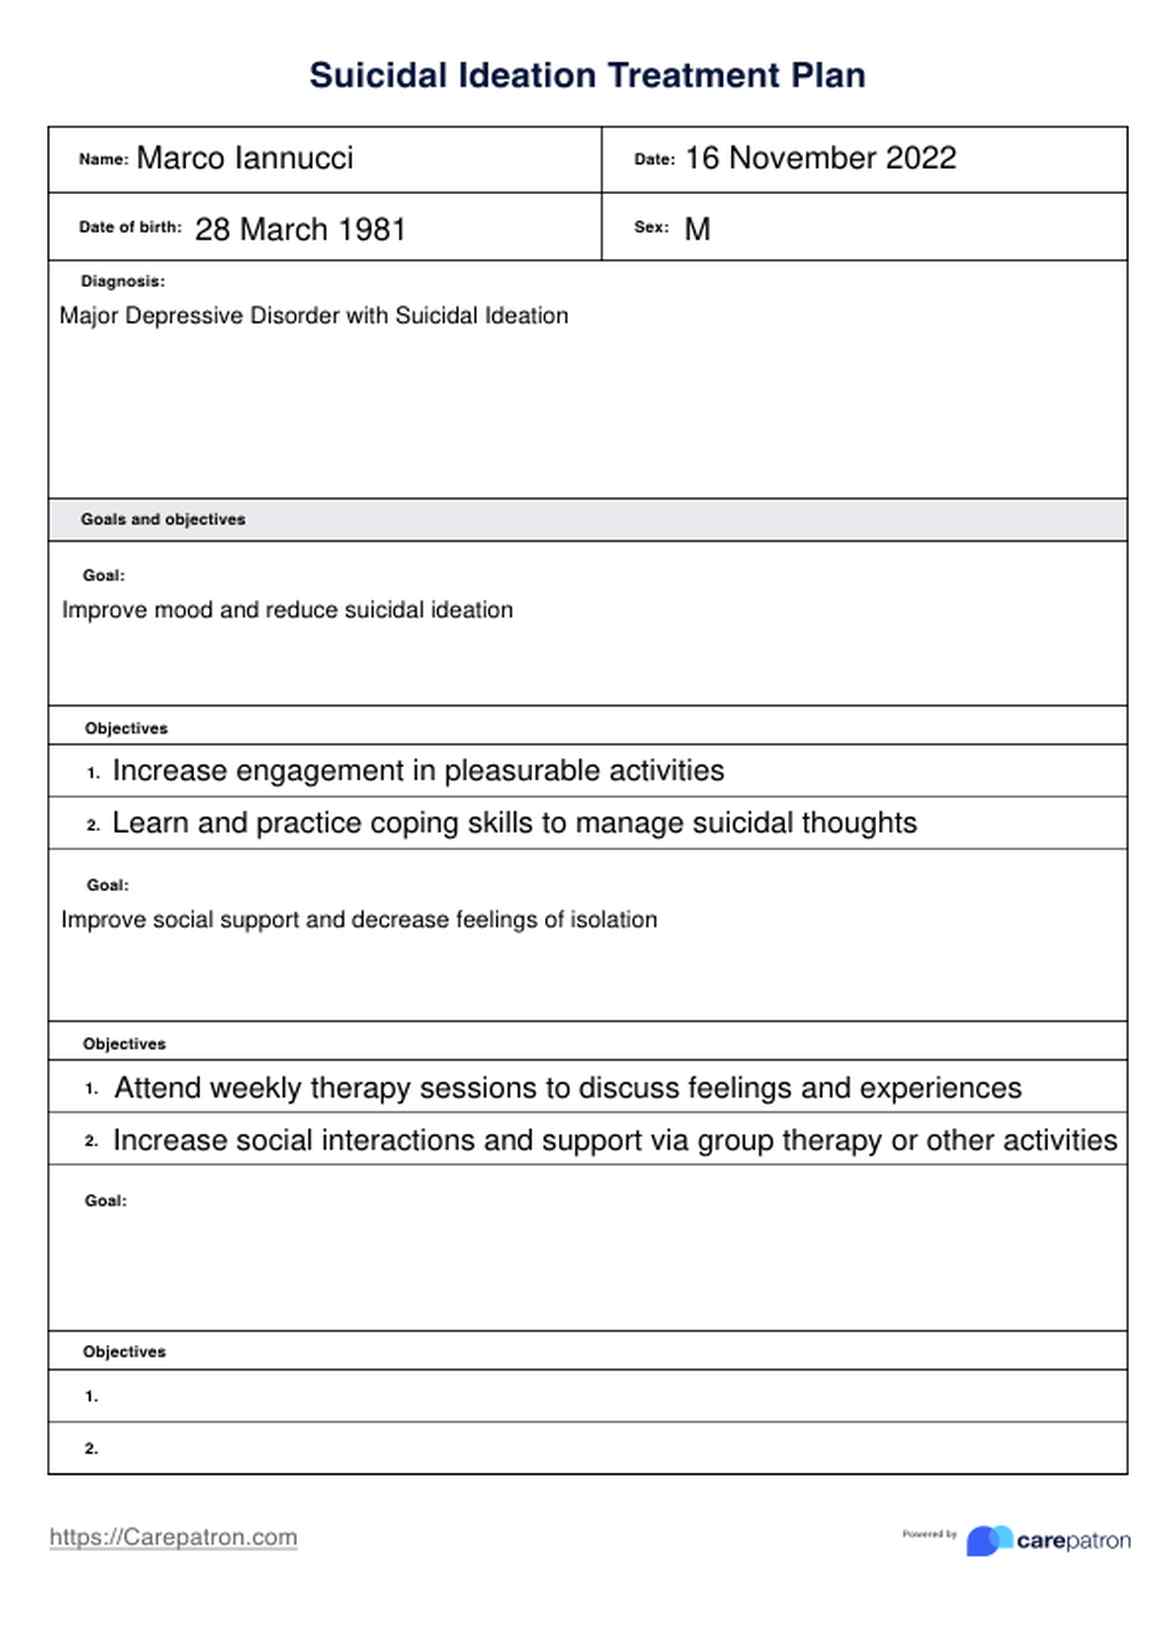 Plan de Tratamiento de Ideación suicida PDF Example